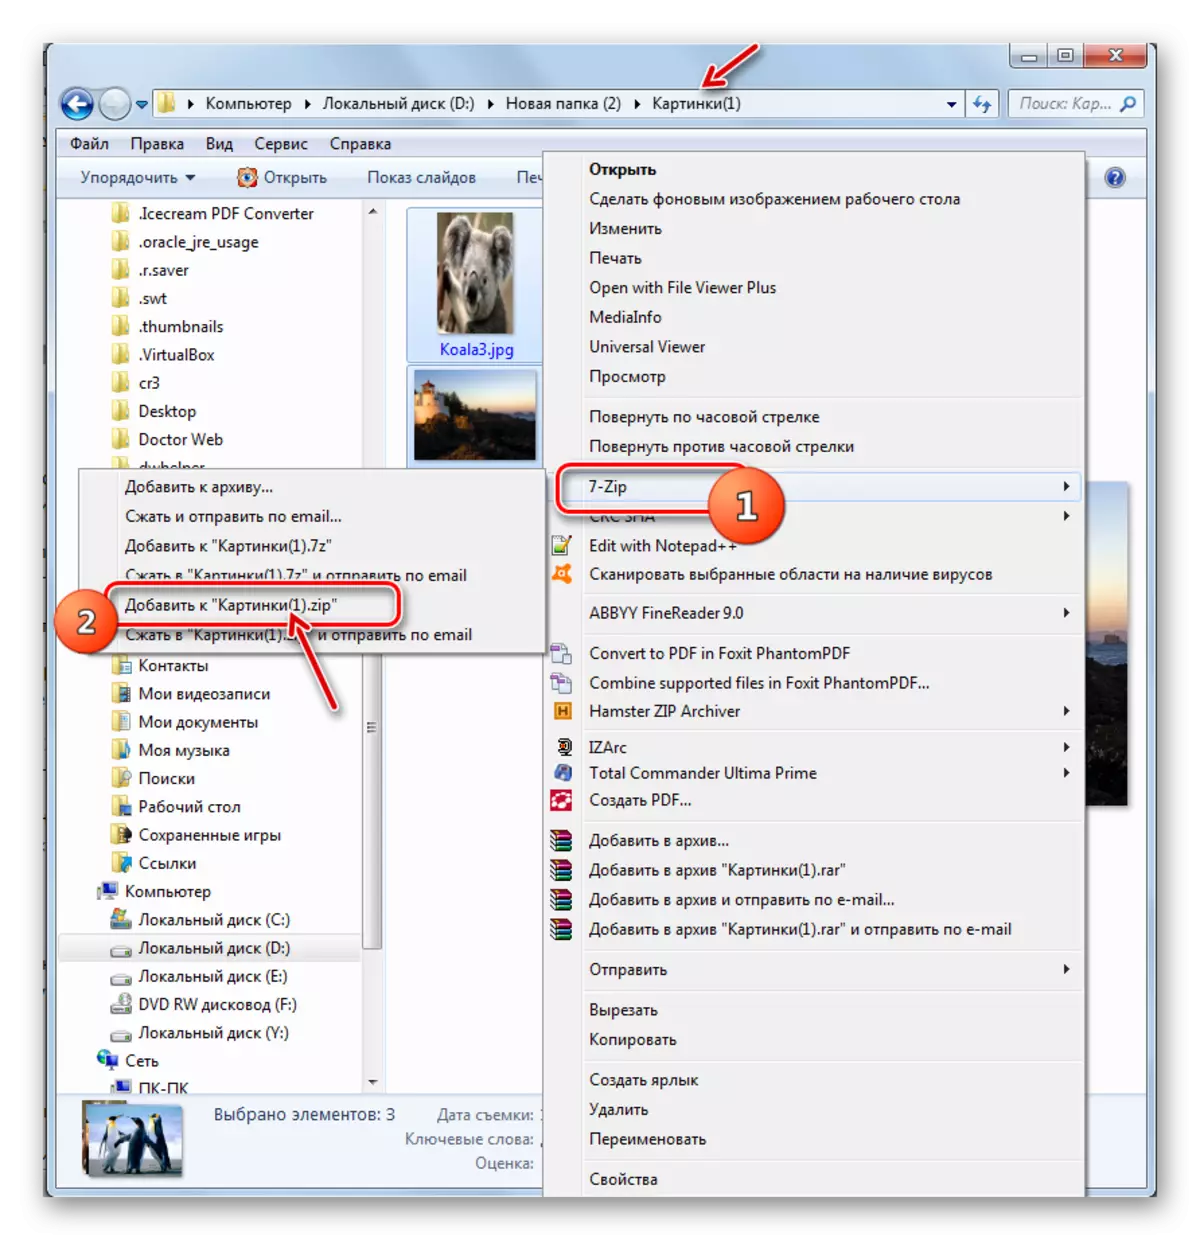 המעבר ליצירת ארכיון ZIP כברירת מחדל באמצעות תפריט ההקשר של Windows Explorer בתוכנית 7-zip